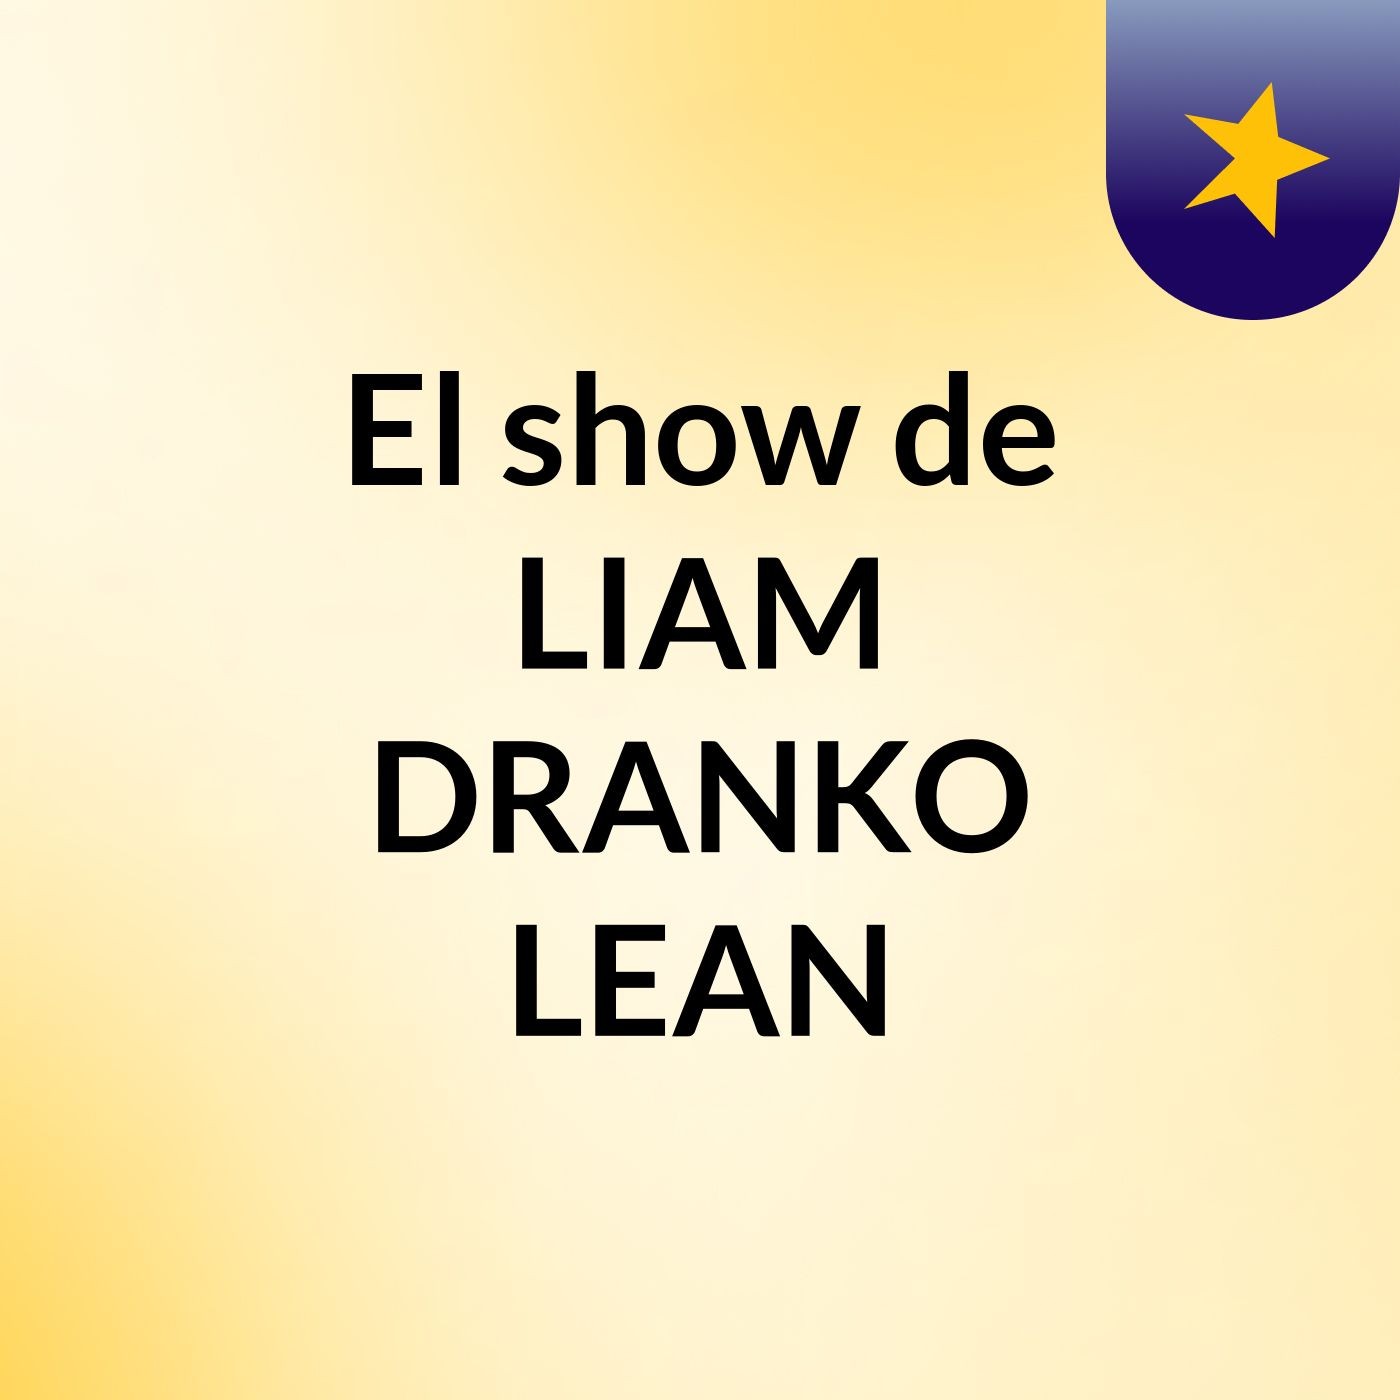 El show de LIAM DRANKO LEAN